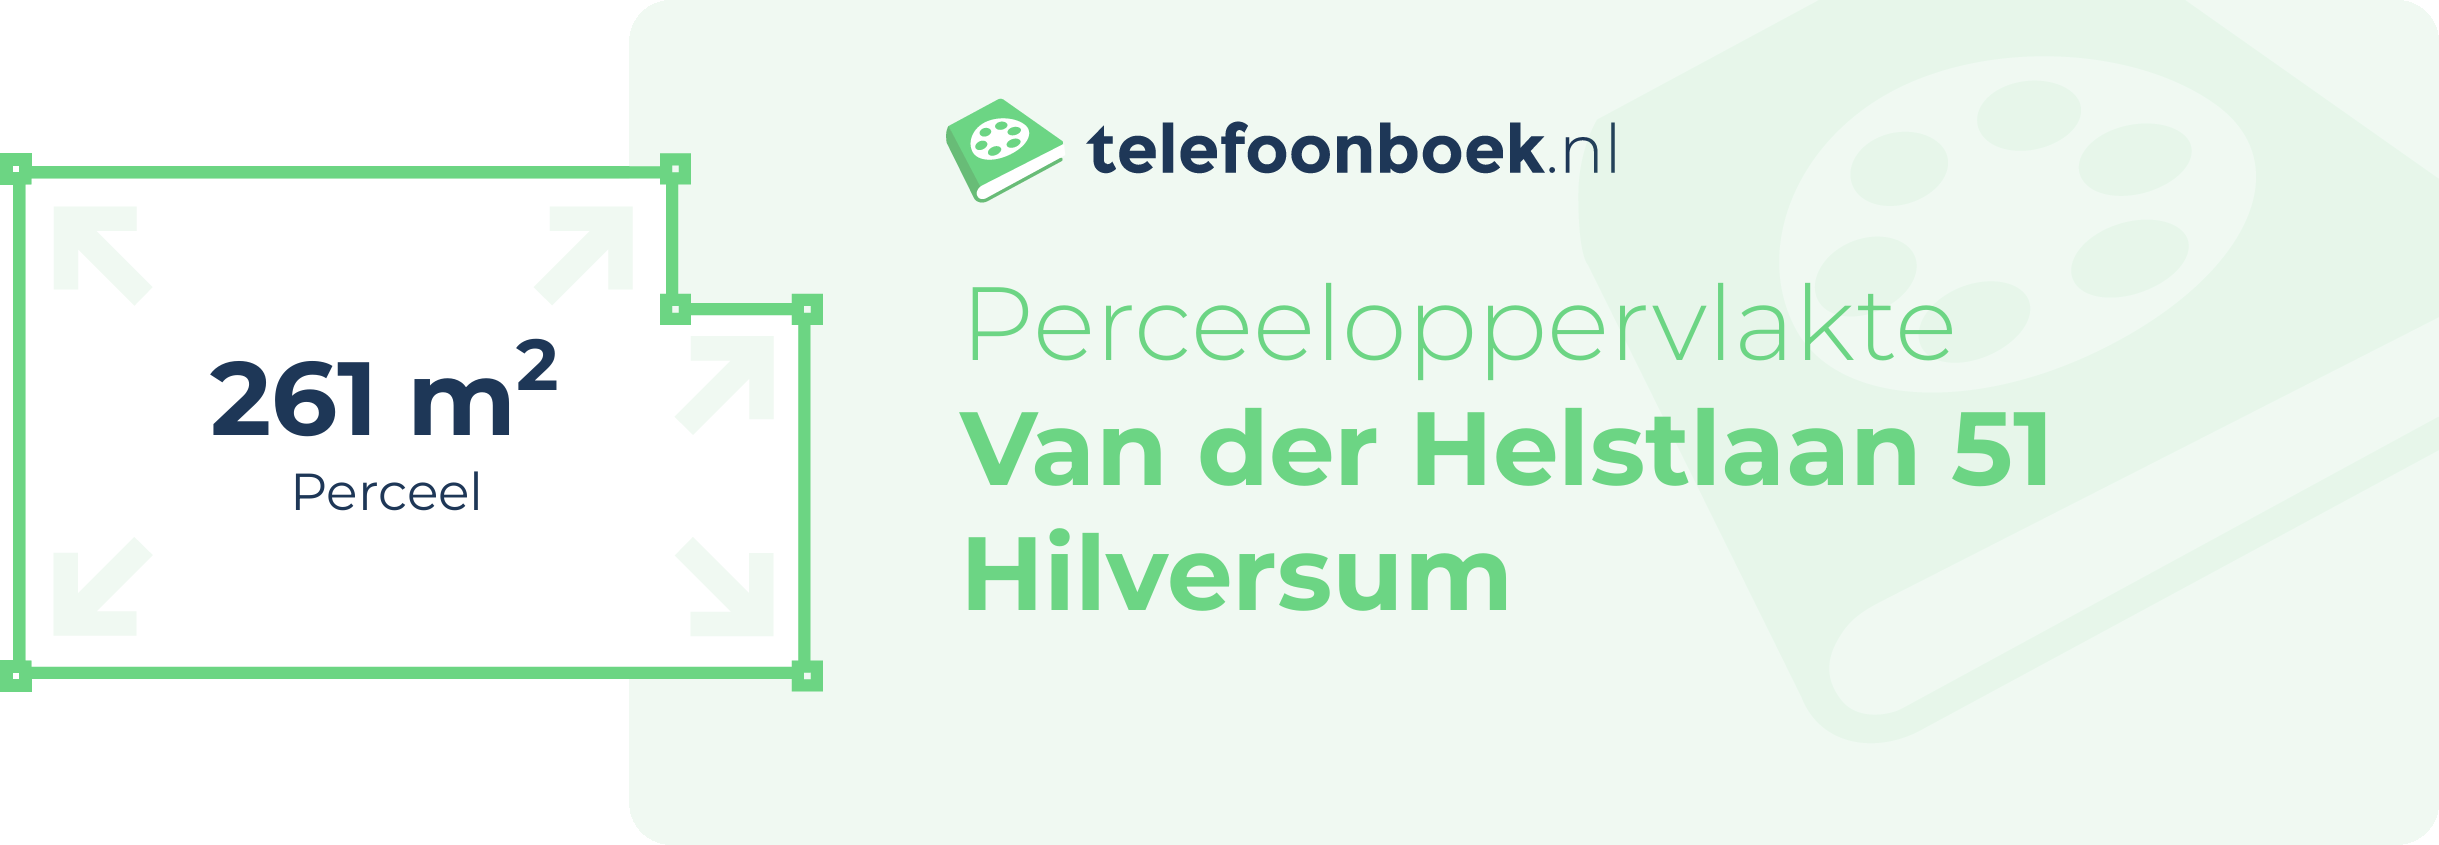 Perceeloppervlakte Van Der Helstlaan 51 Hilversum